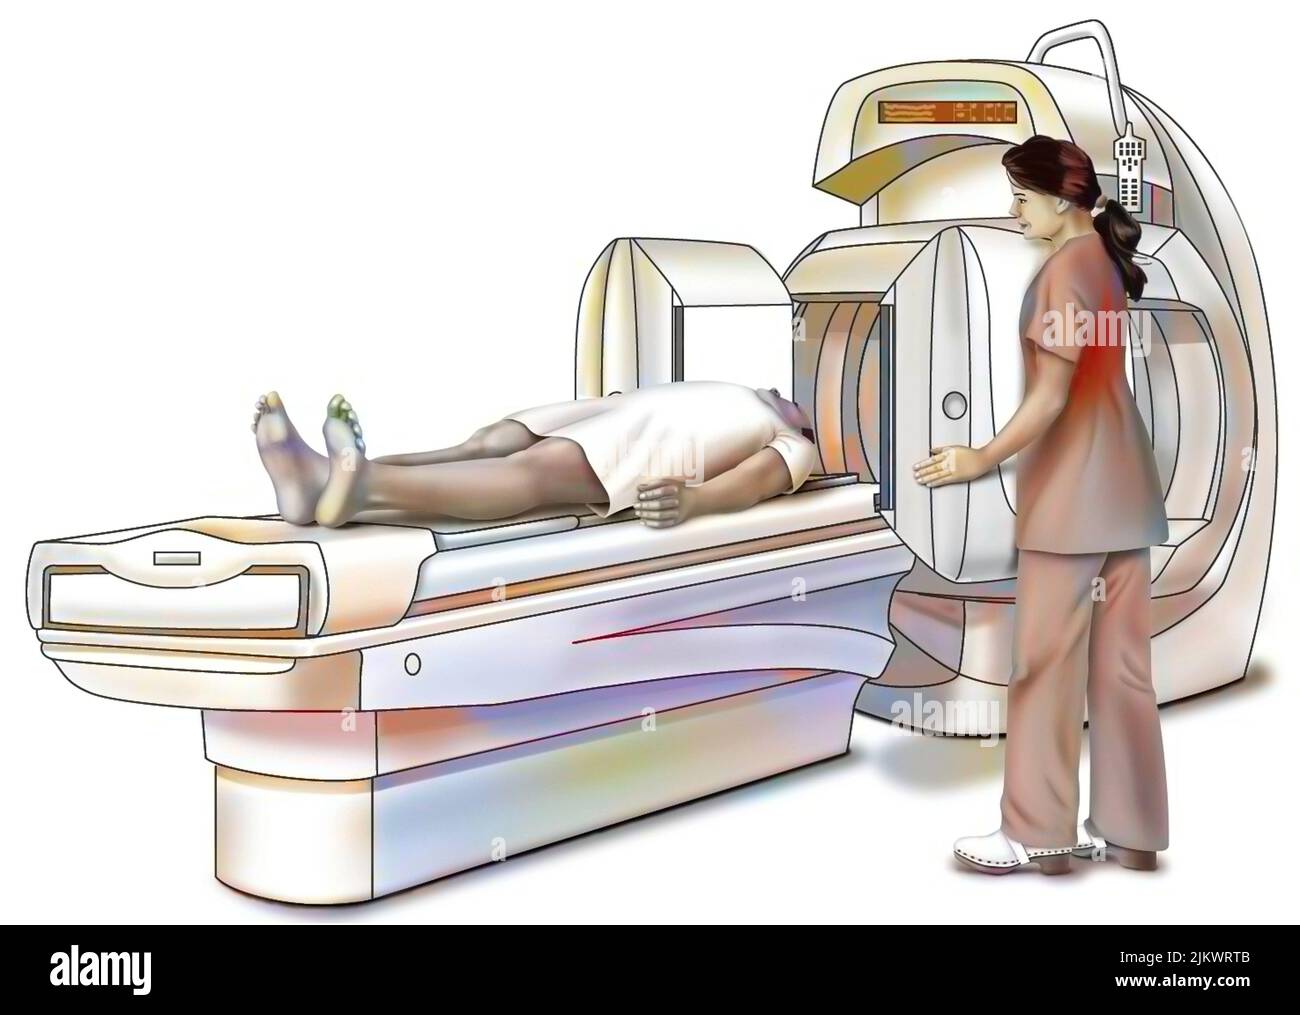 Darstellung eines Scanners, eines medizinischen Bildgebungsgeräts. Stockfoto